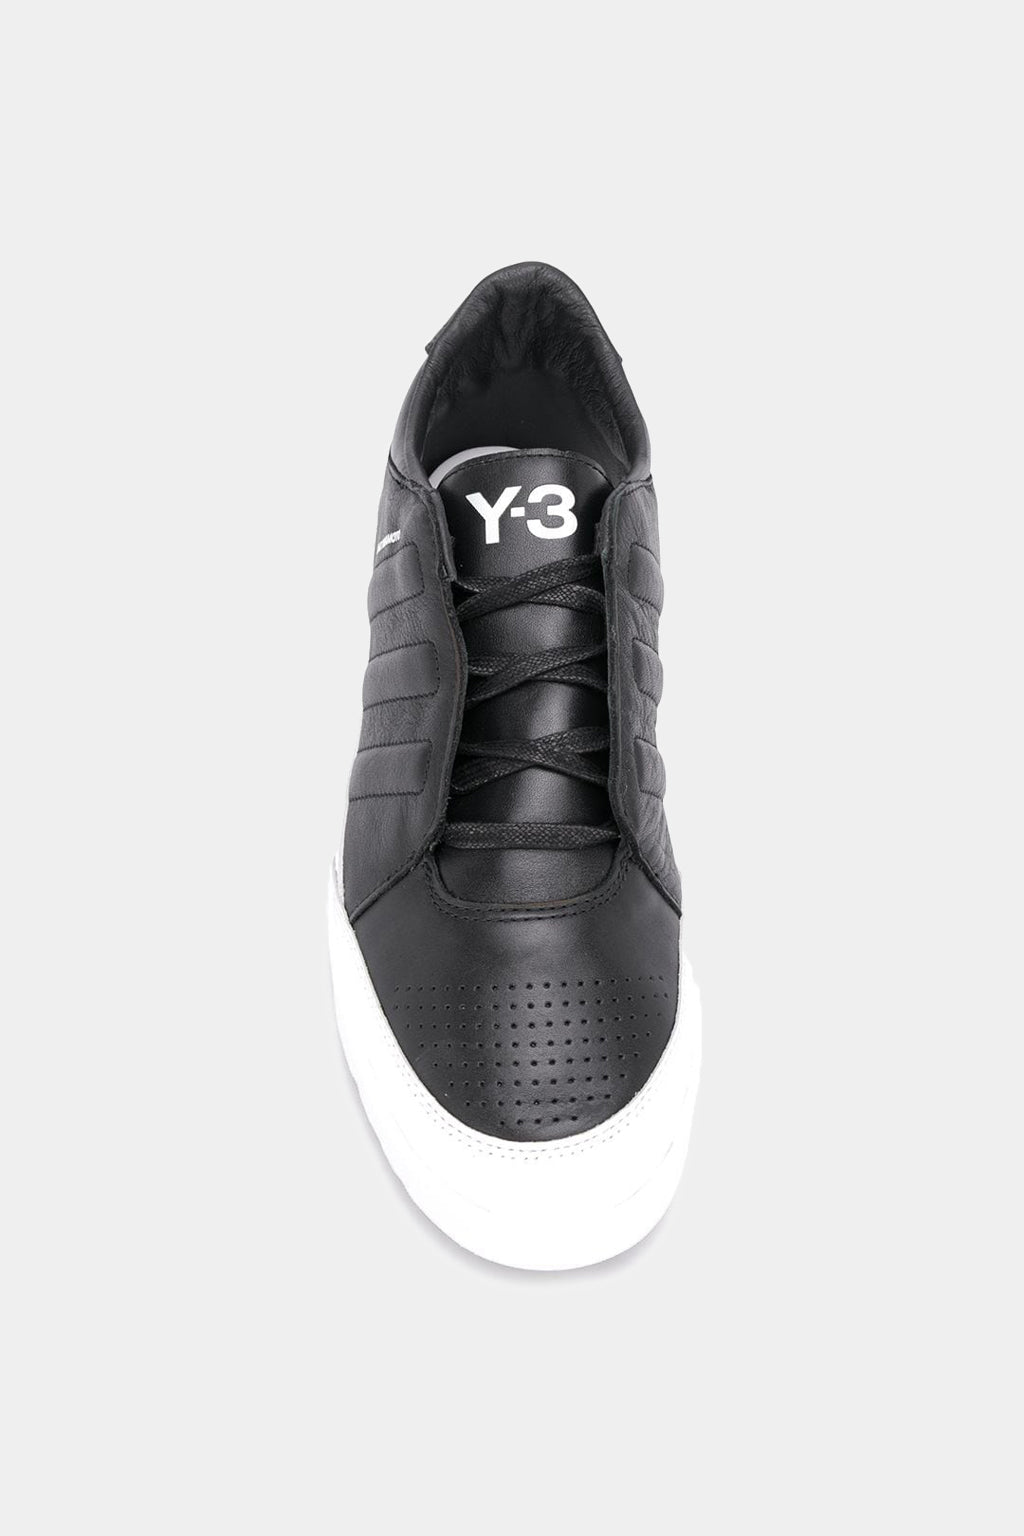 Adidas - Y-3 Honja Low Sneakers